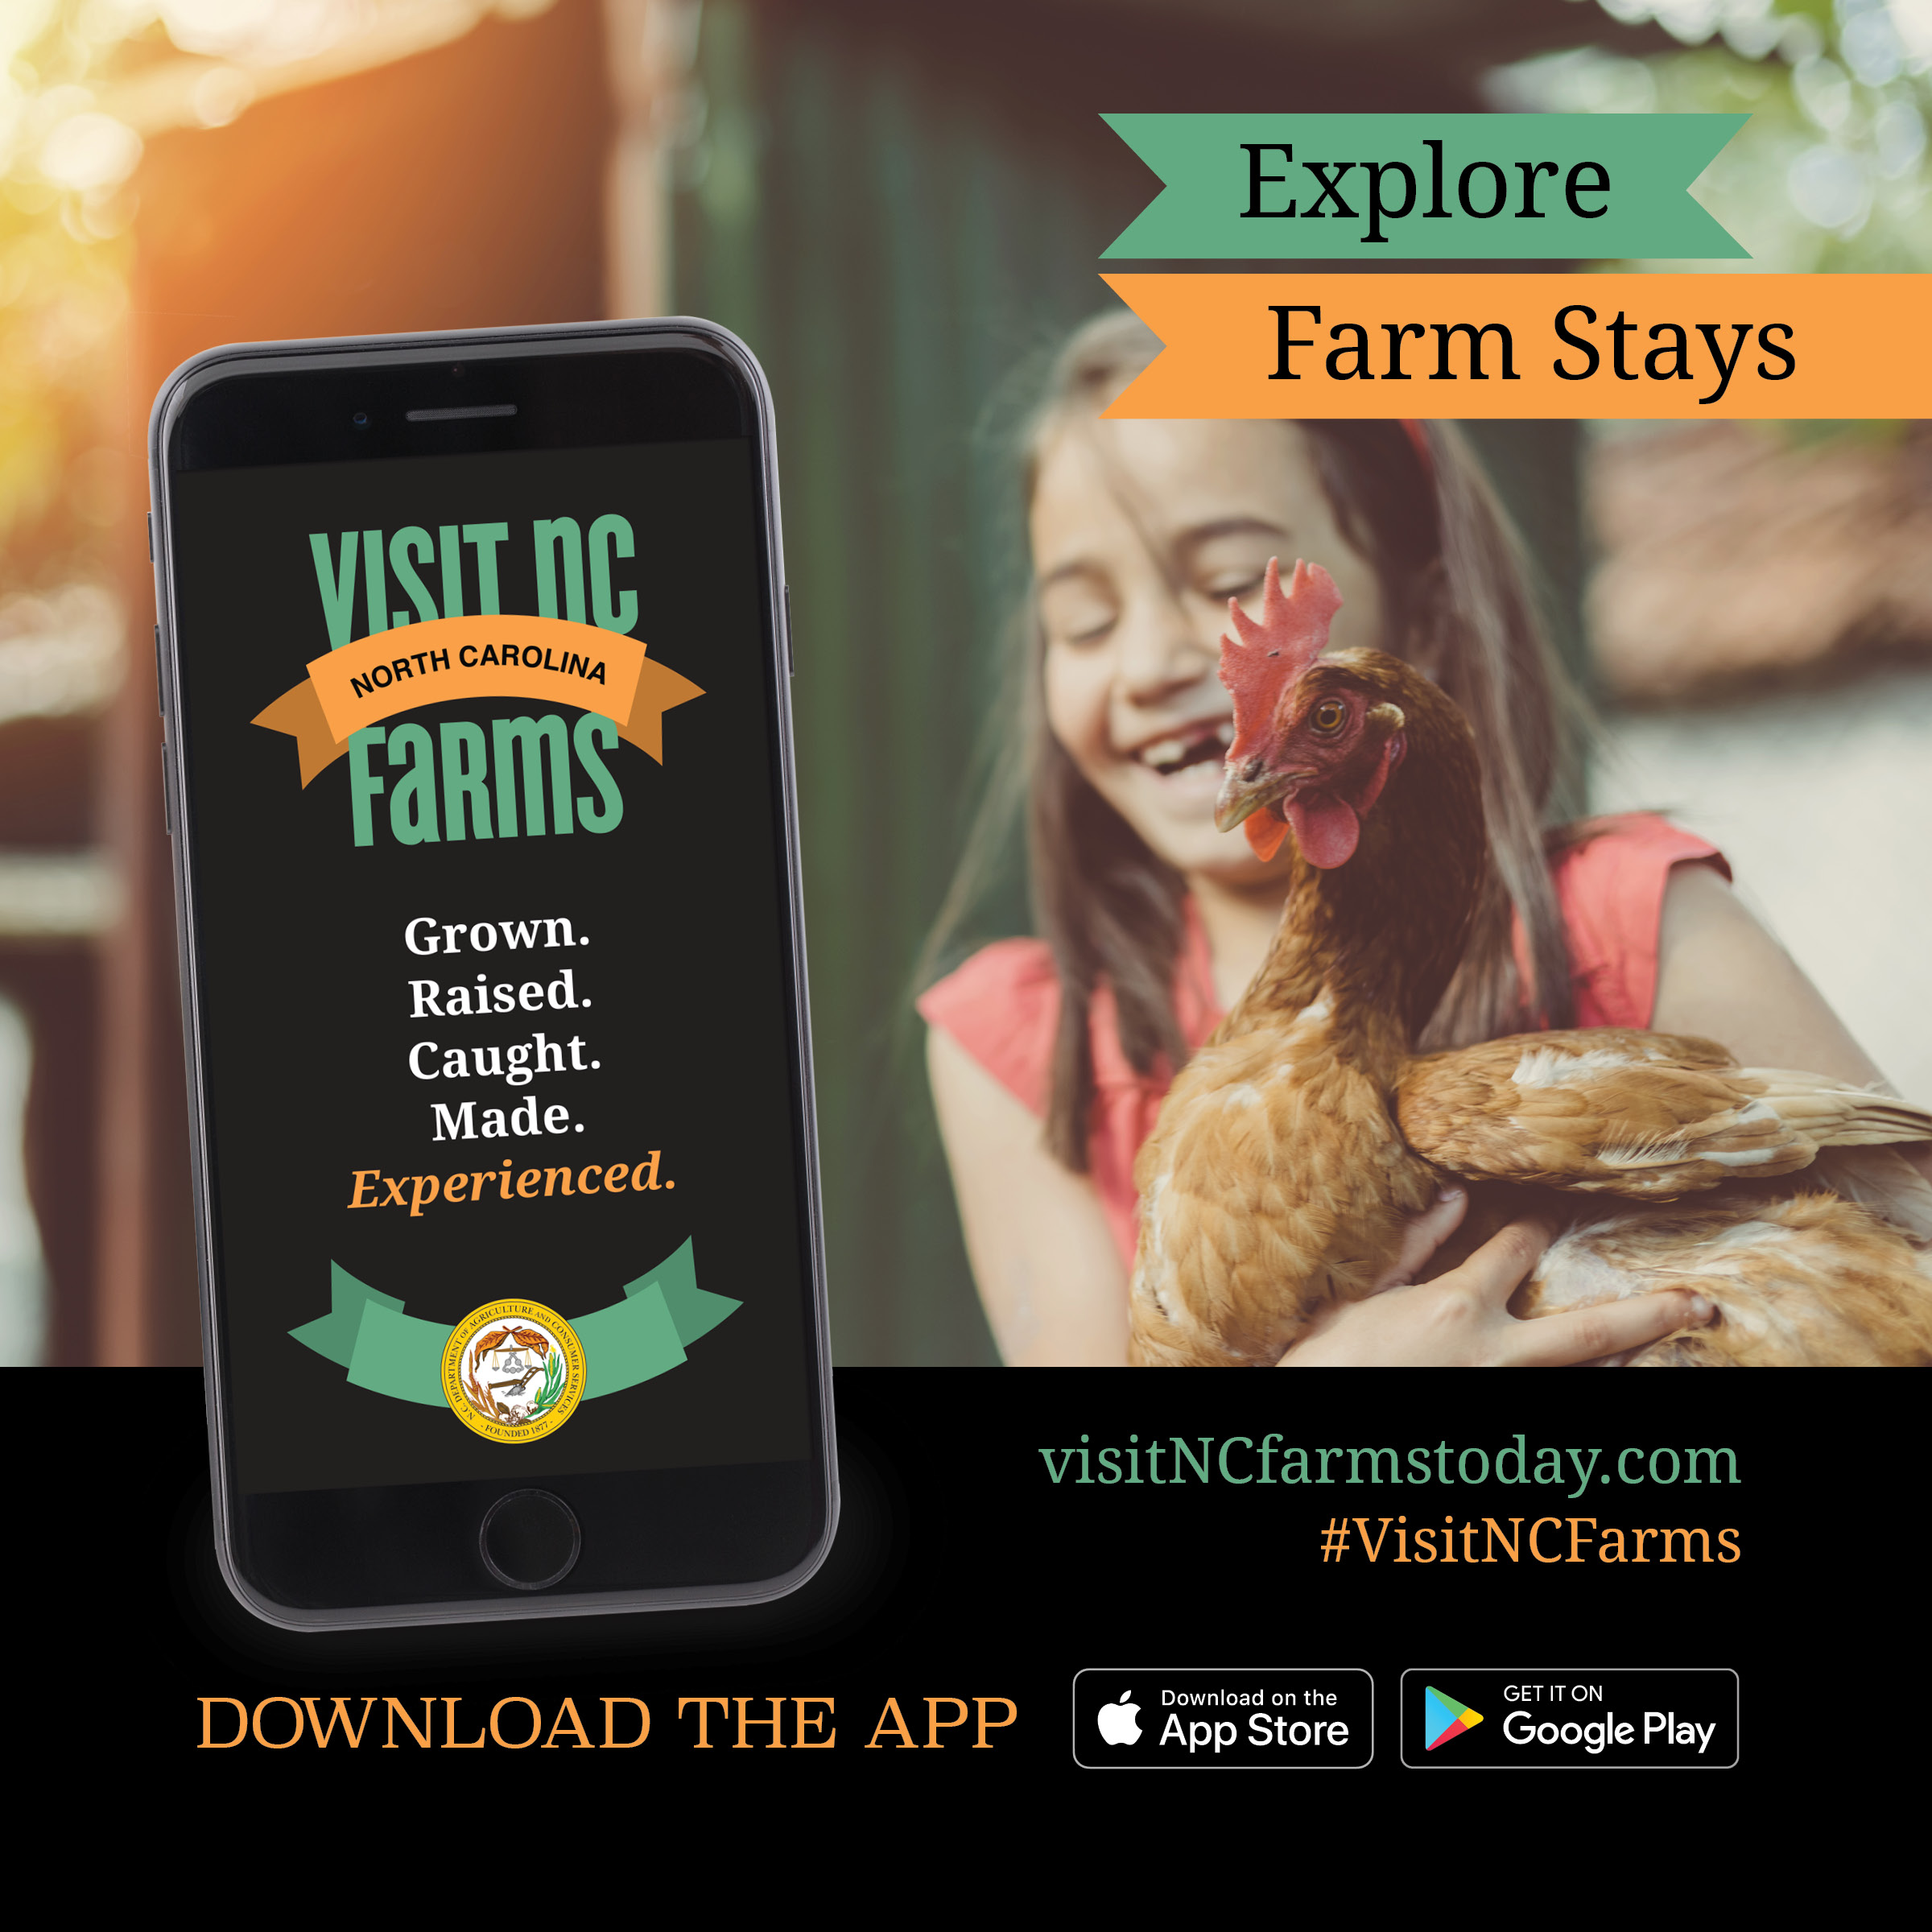 Visit NC Farms app flyer image